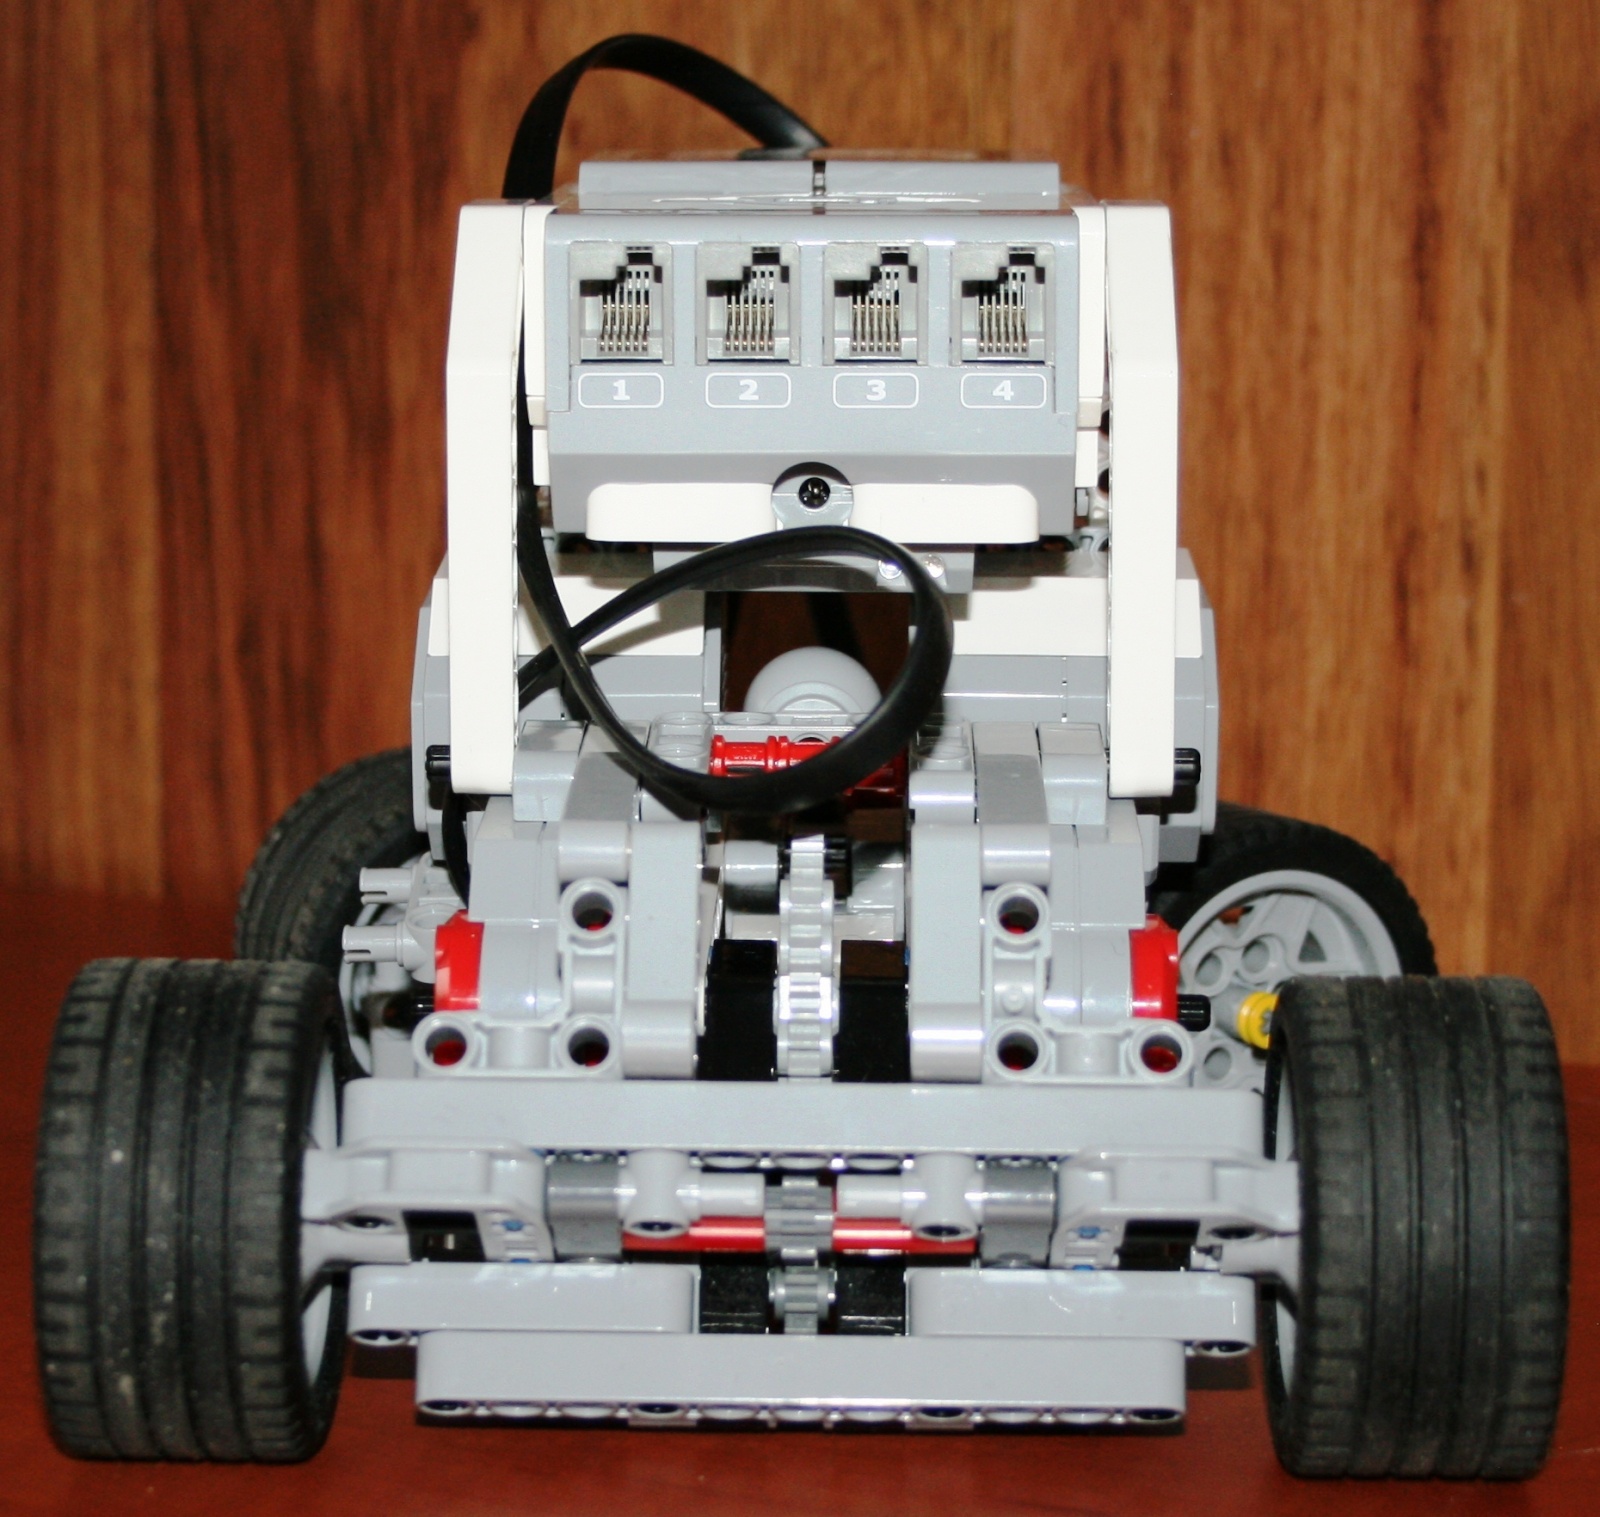 Взаимодействие с роботом на базе конструктора Lego Mindstorms EV3 через RCML - 4